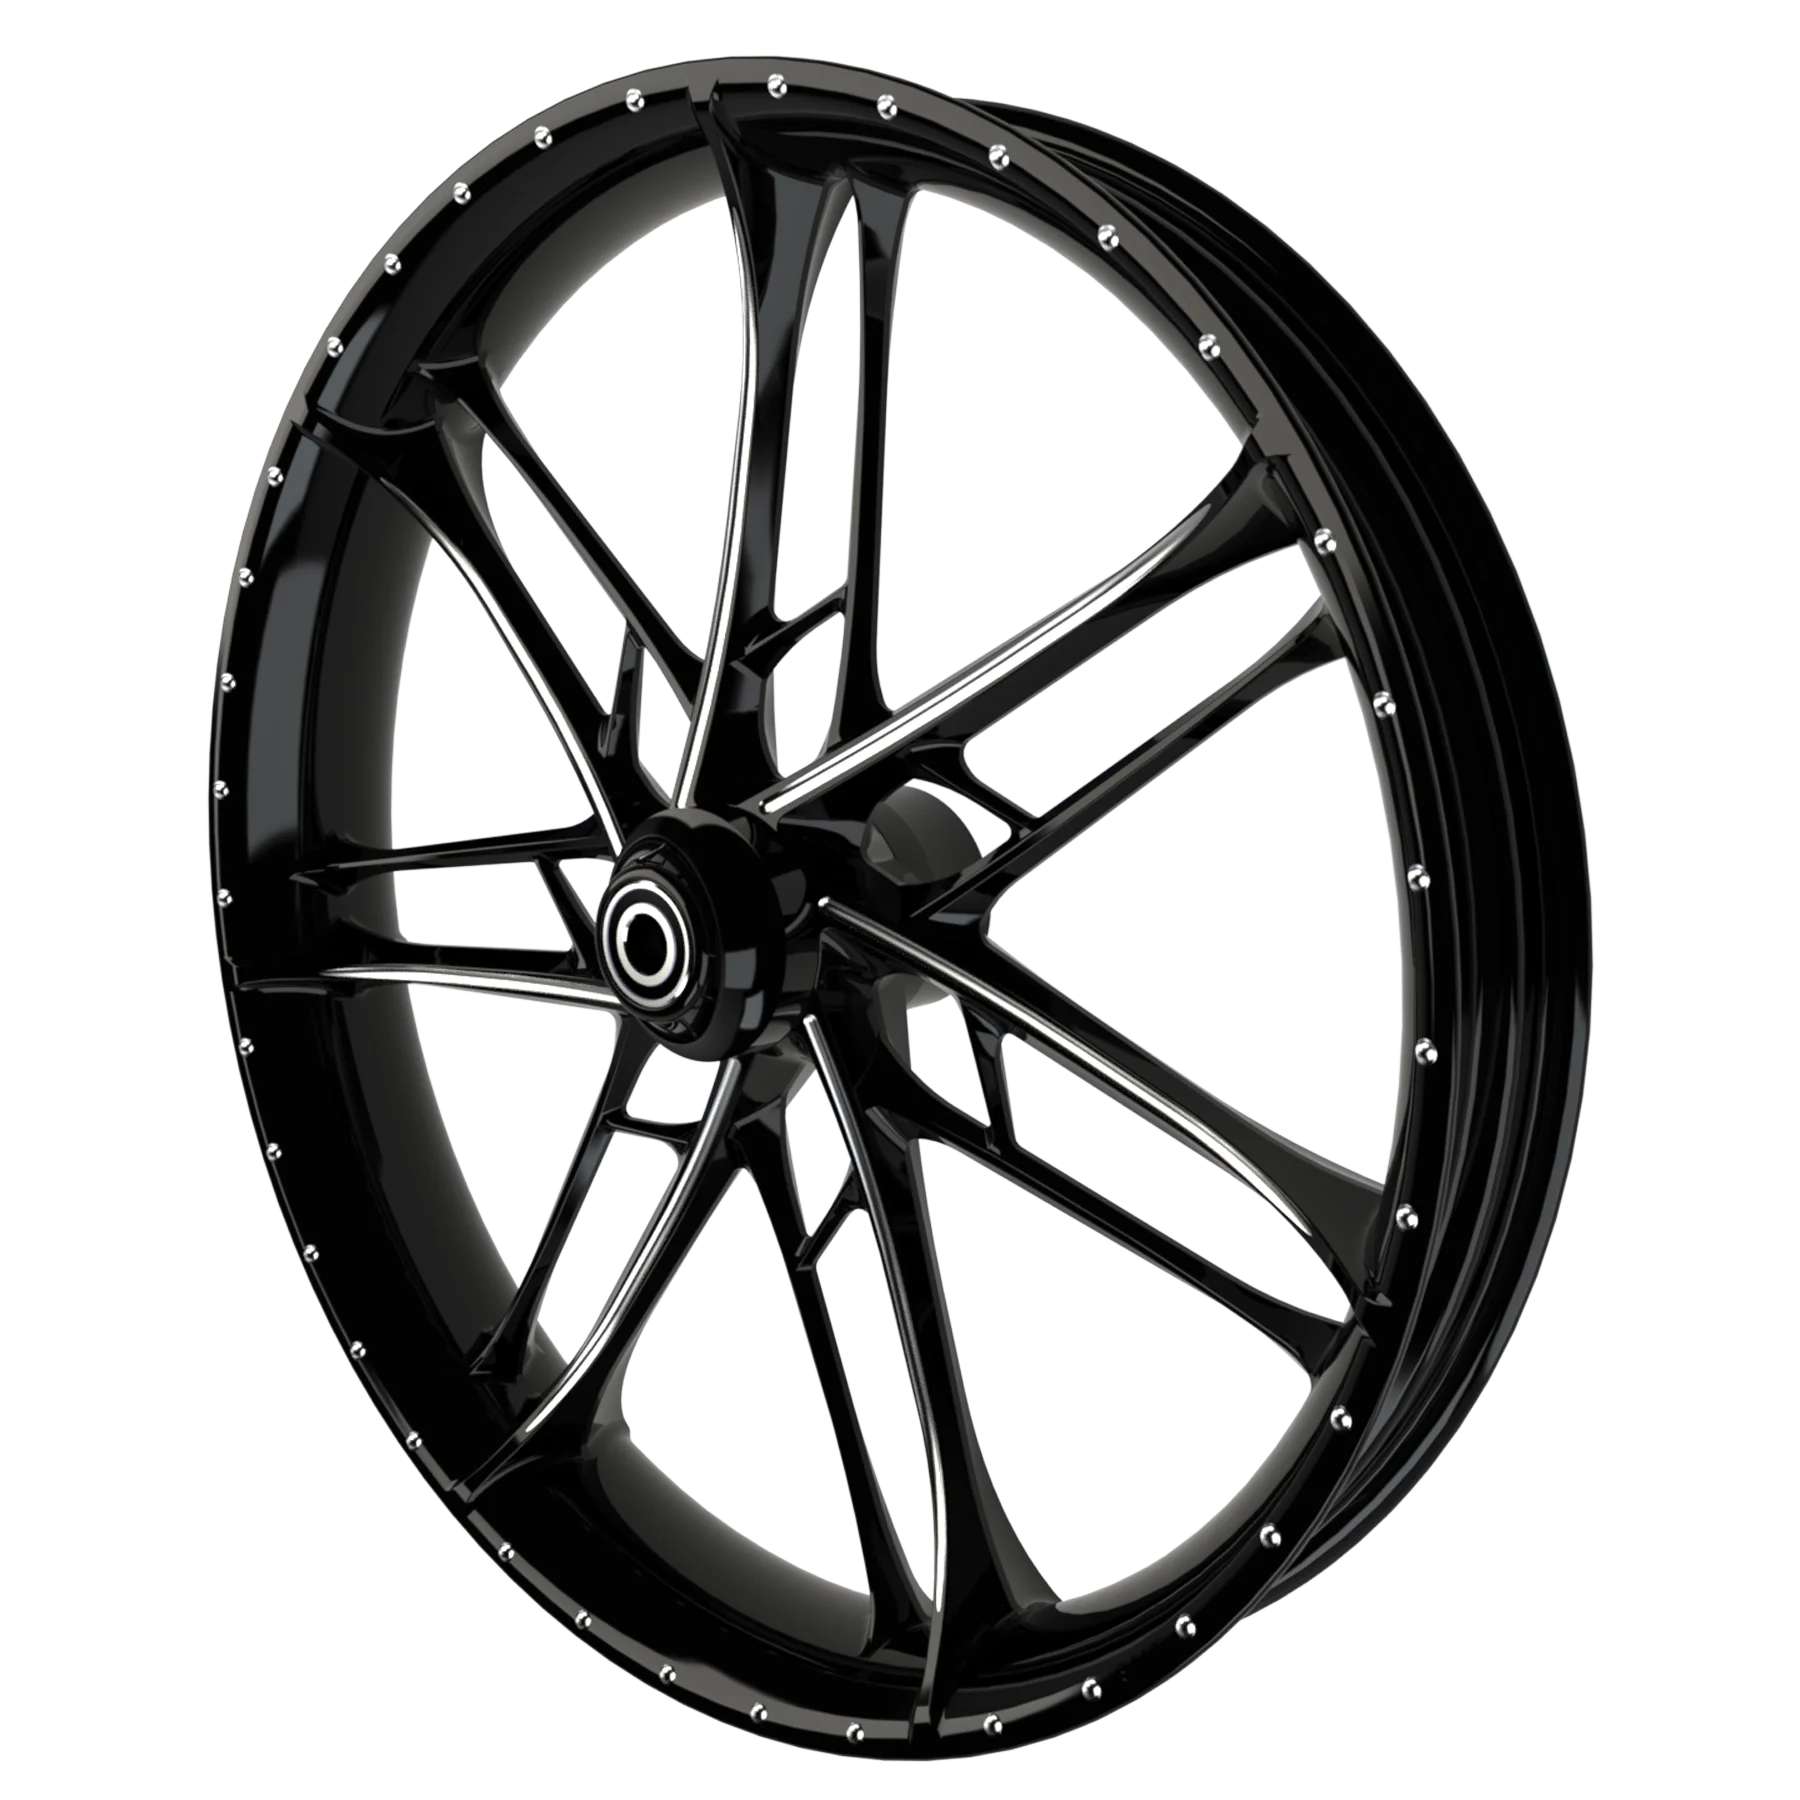 Gran Sport 3D custom motorcycle wheel in black double cut